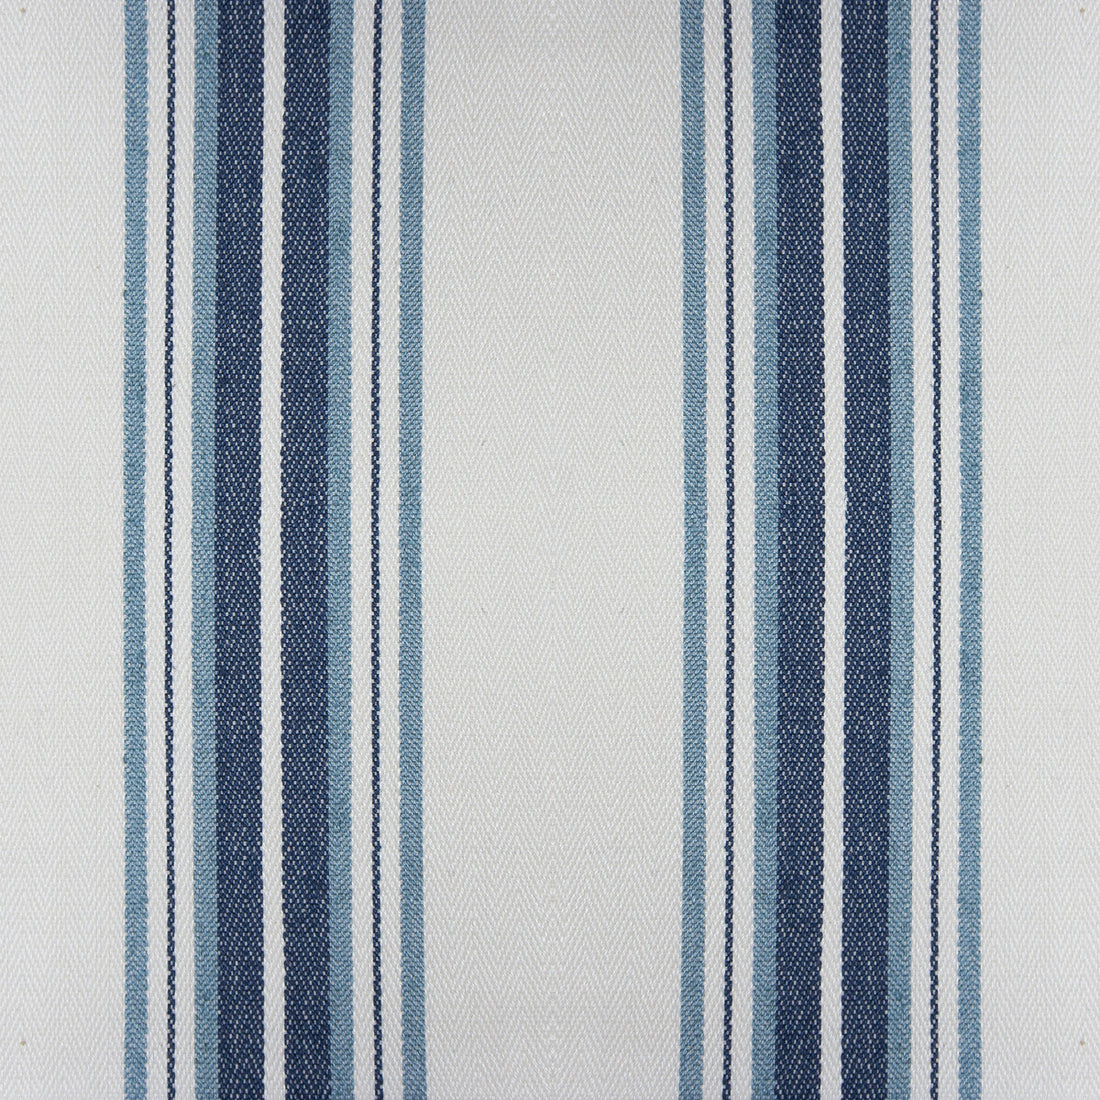 Nueva York fabric in azul color - pattern GDT5573.002.0 - by Gaston y Daniela in the Gaston Luis Bustamante collection